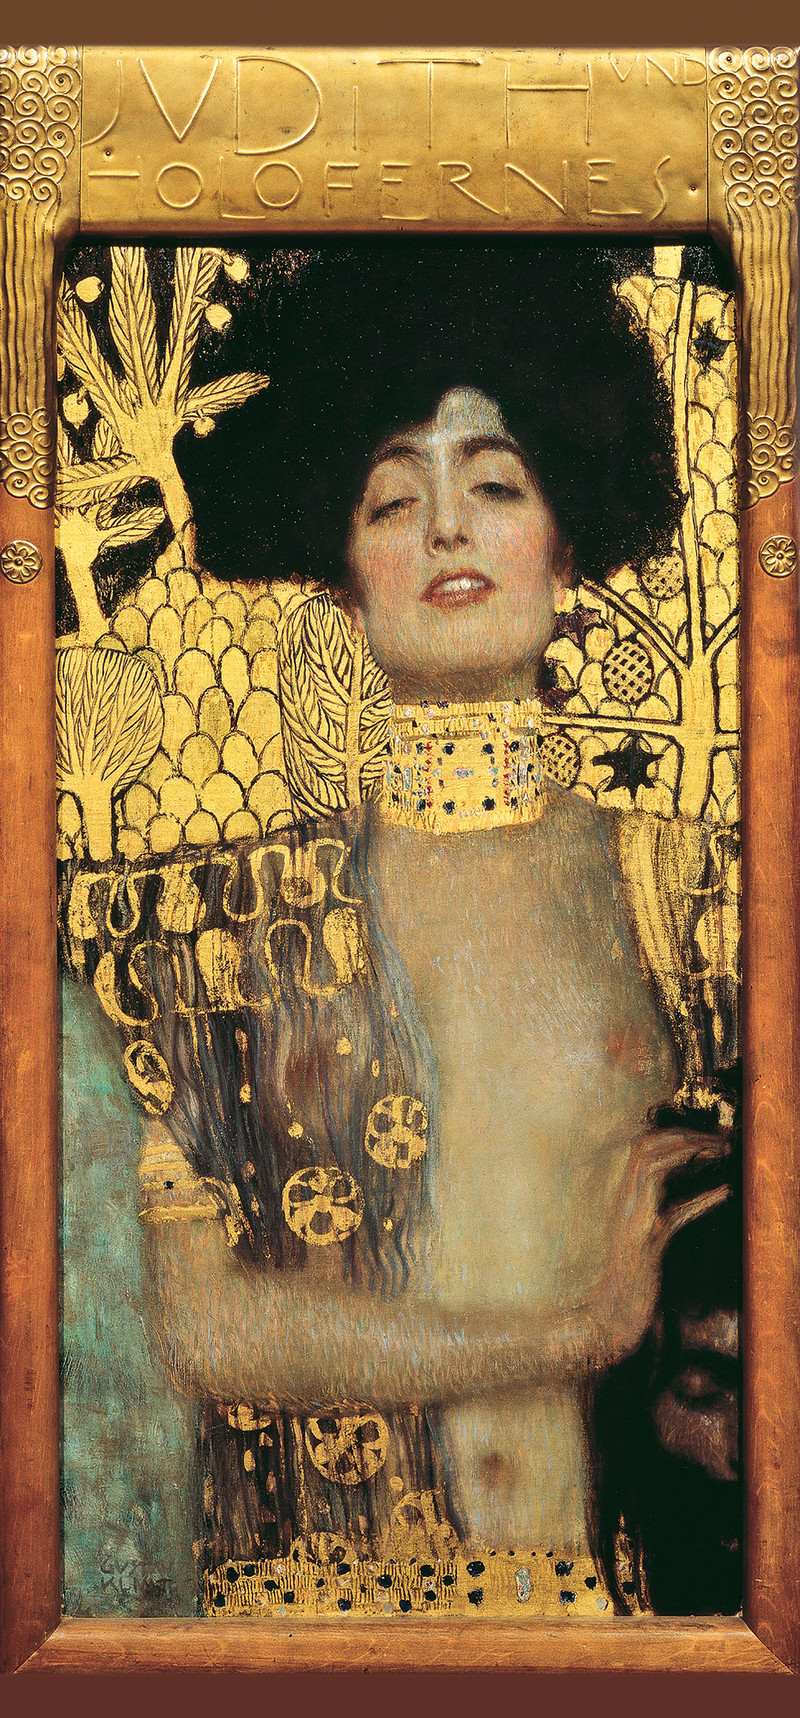 'Judith I', 1901 von Gustav Klimt. Die Mörderin und das Haupt ihres Opfers Holofernes